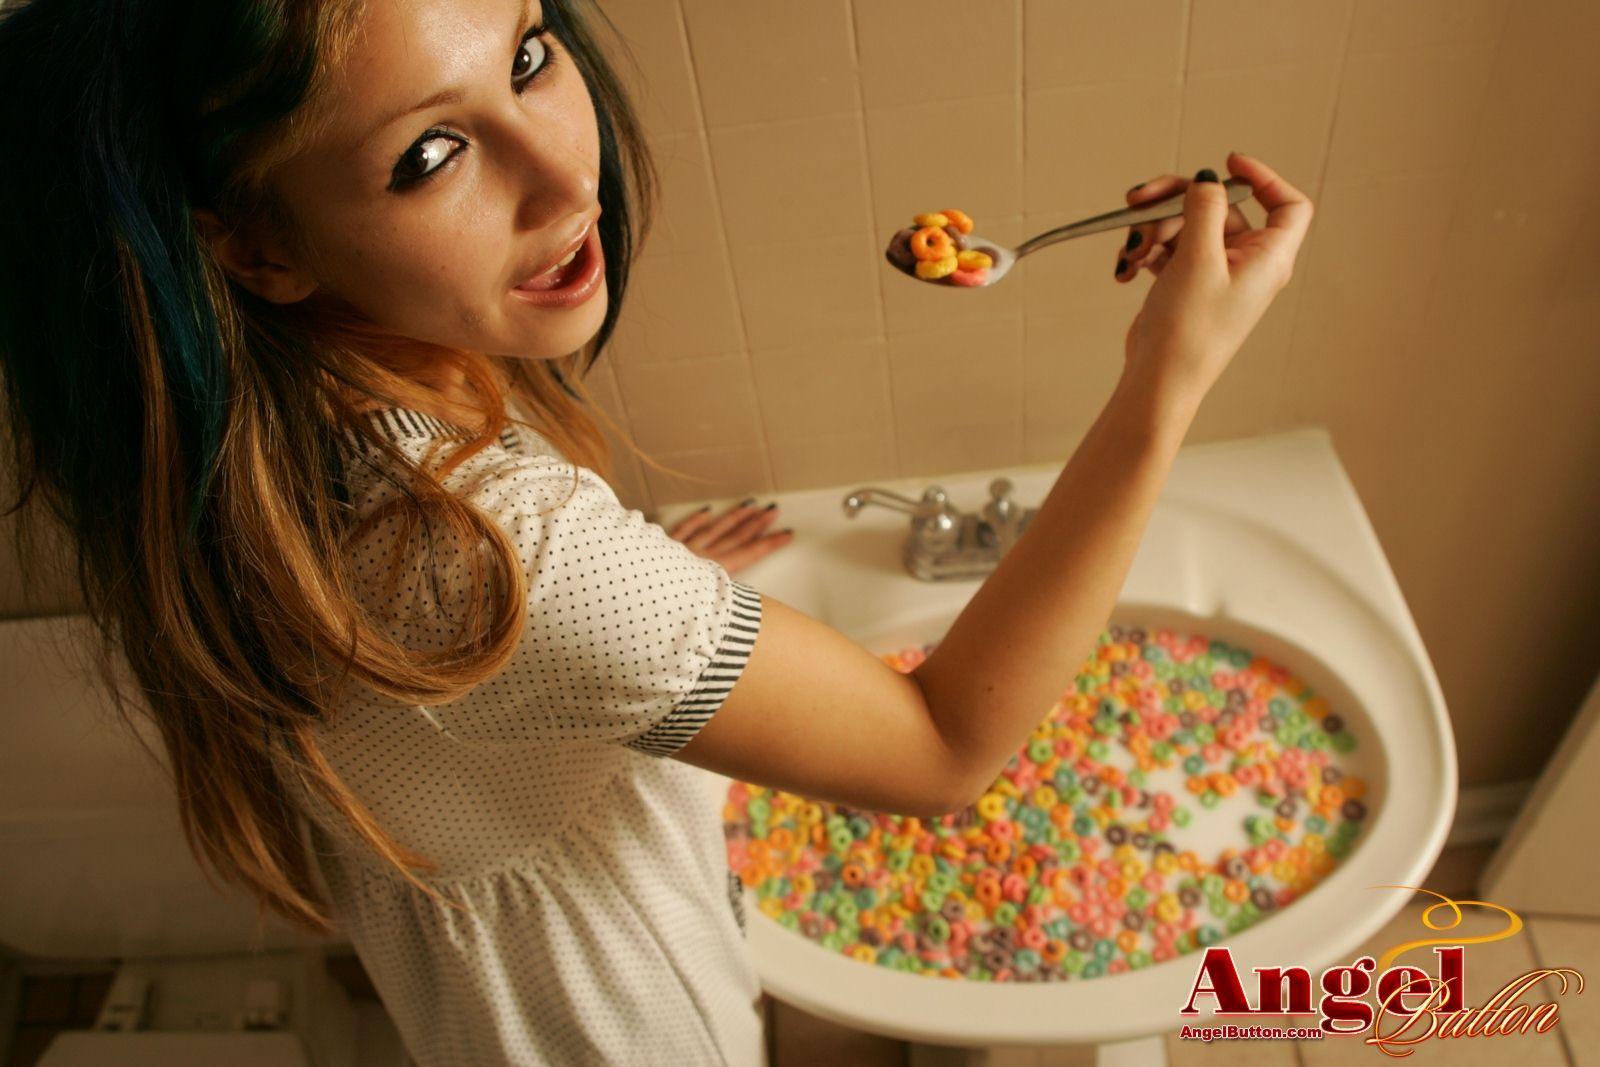 Fotos de angel button comiendo cereales en el fregadero
 #53171865